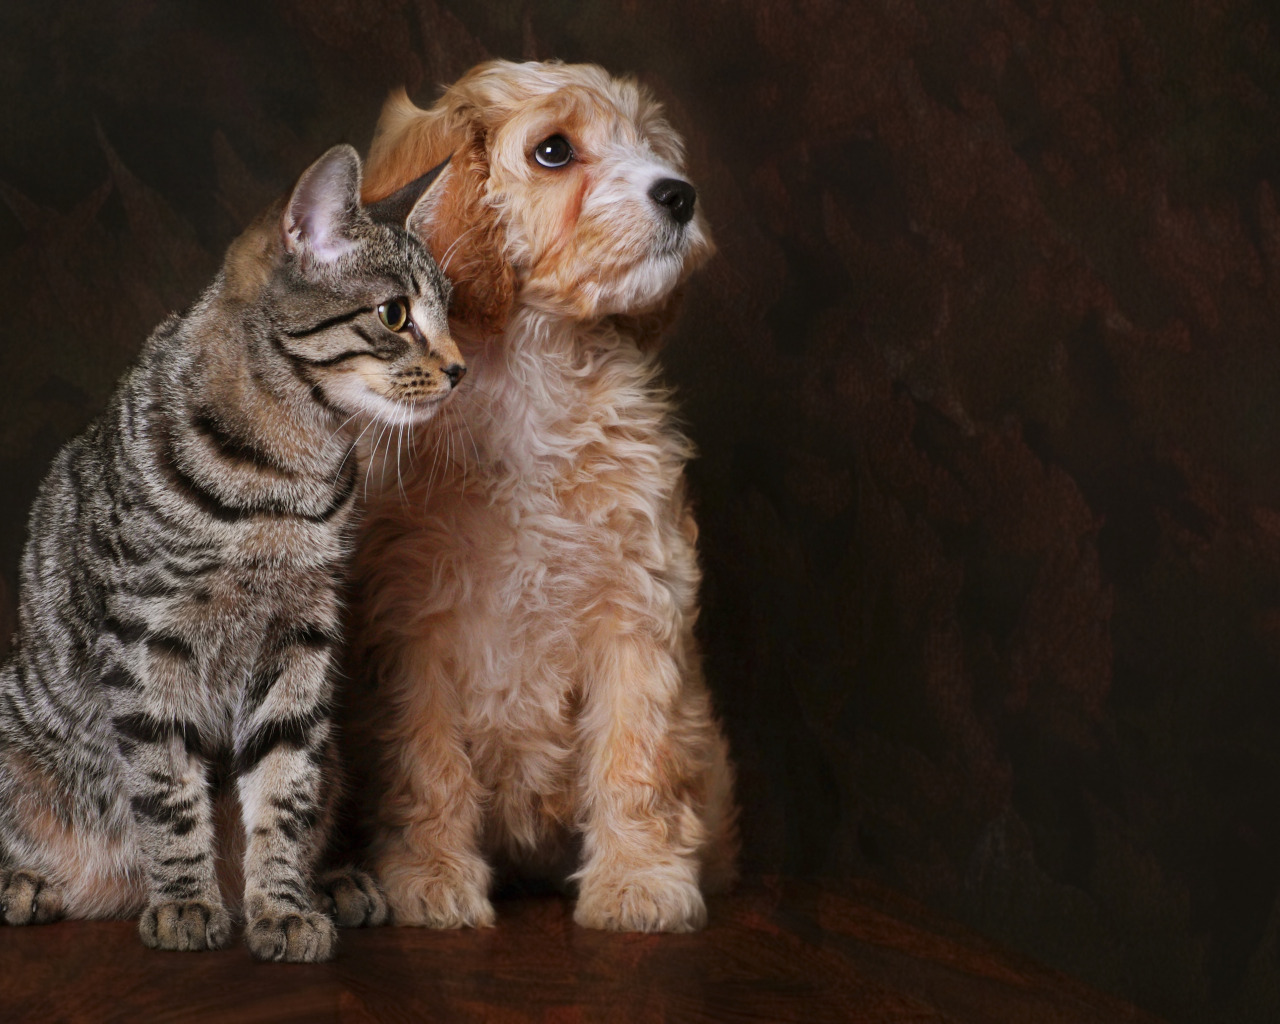 Cat dog 18. Кошки и собаки. Собака и кошка вместе. Фото кошек и собак. Домашние любимцы.